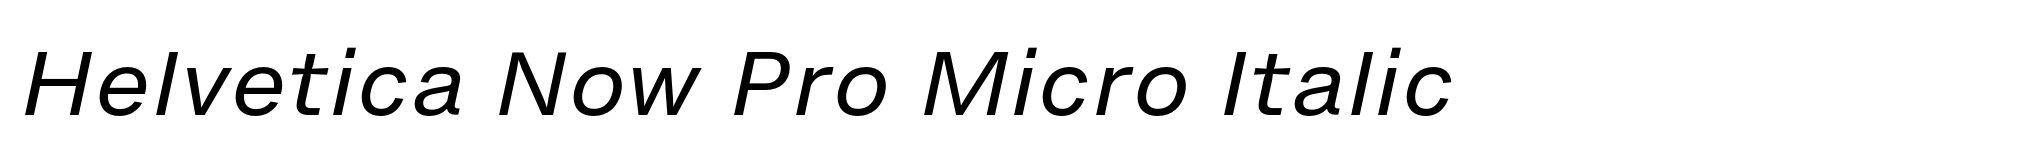 Helvetica Now Pro Micro Italic image